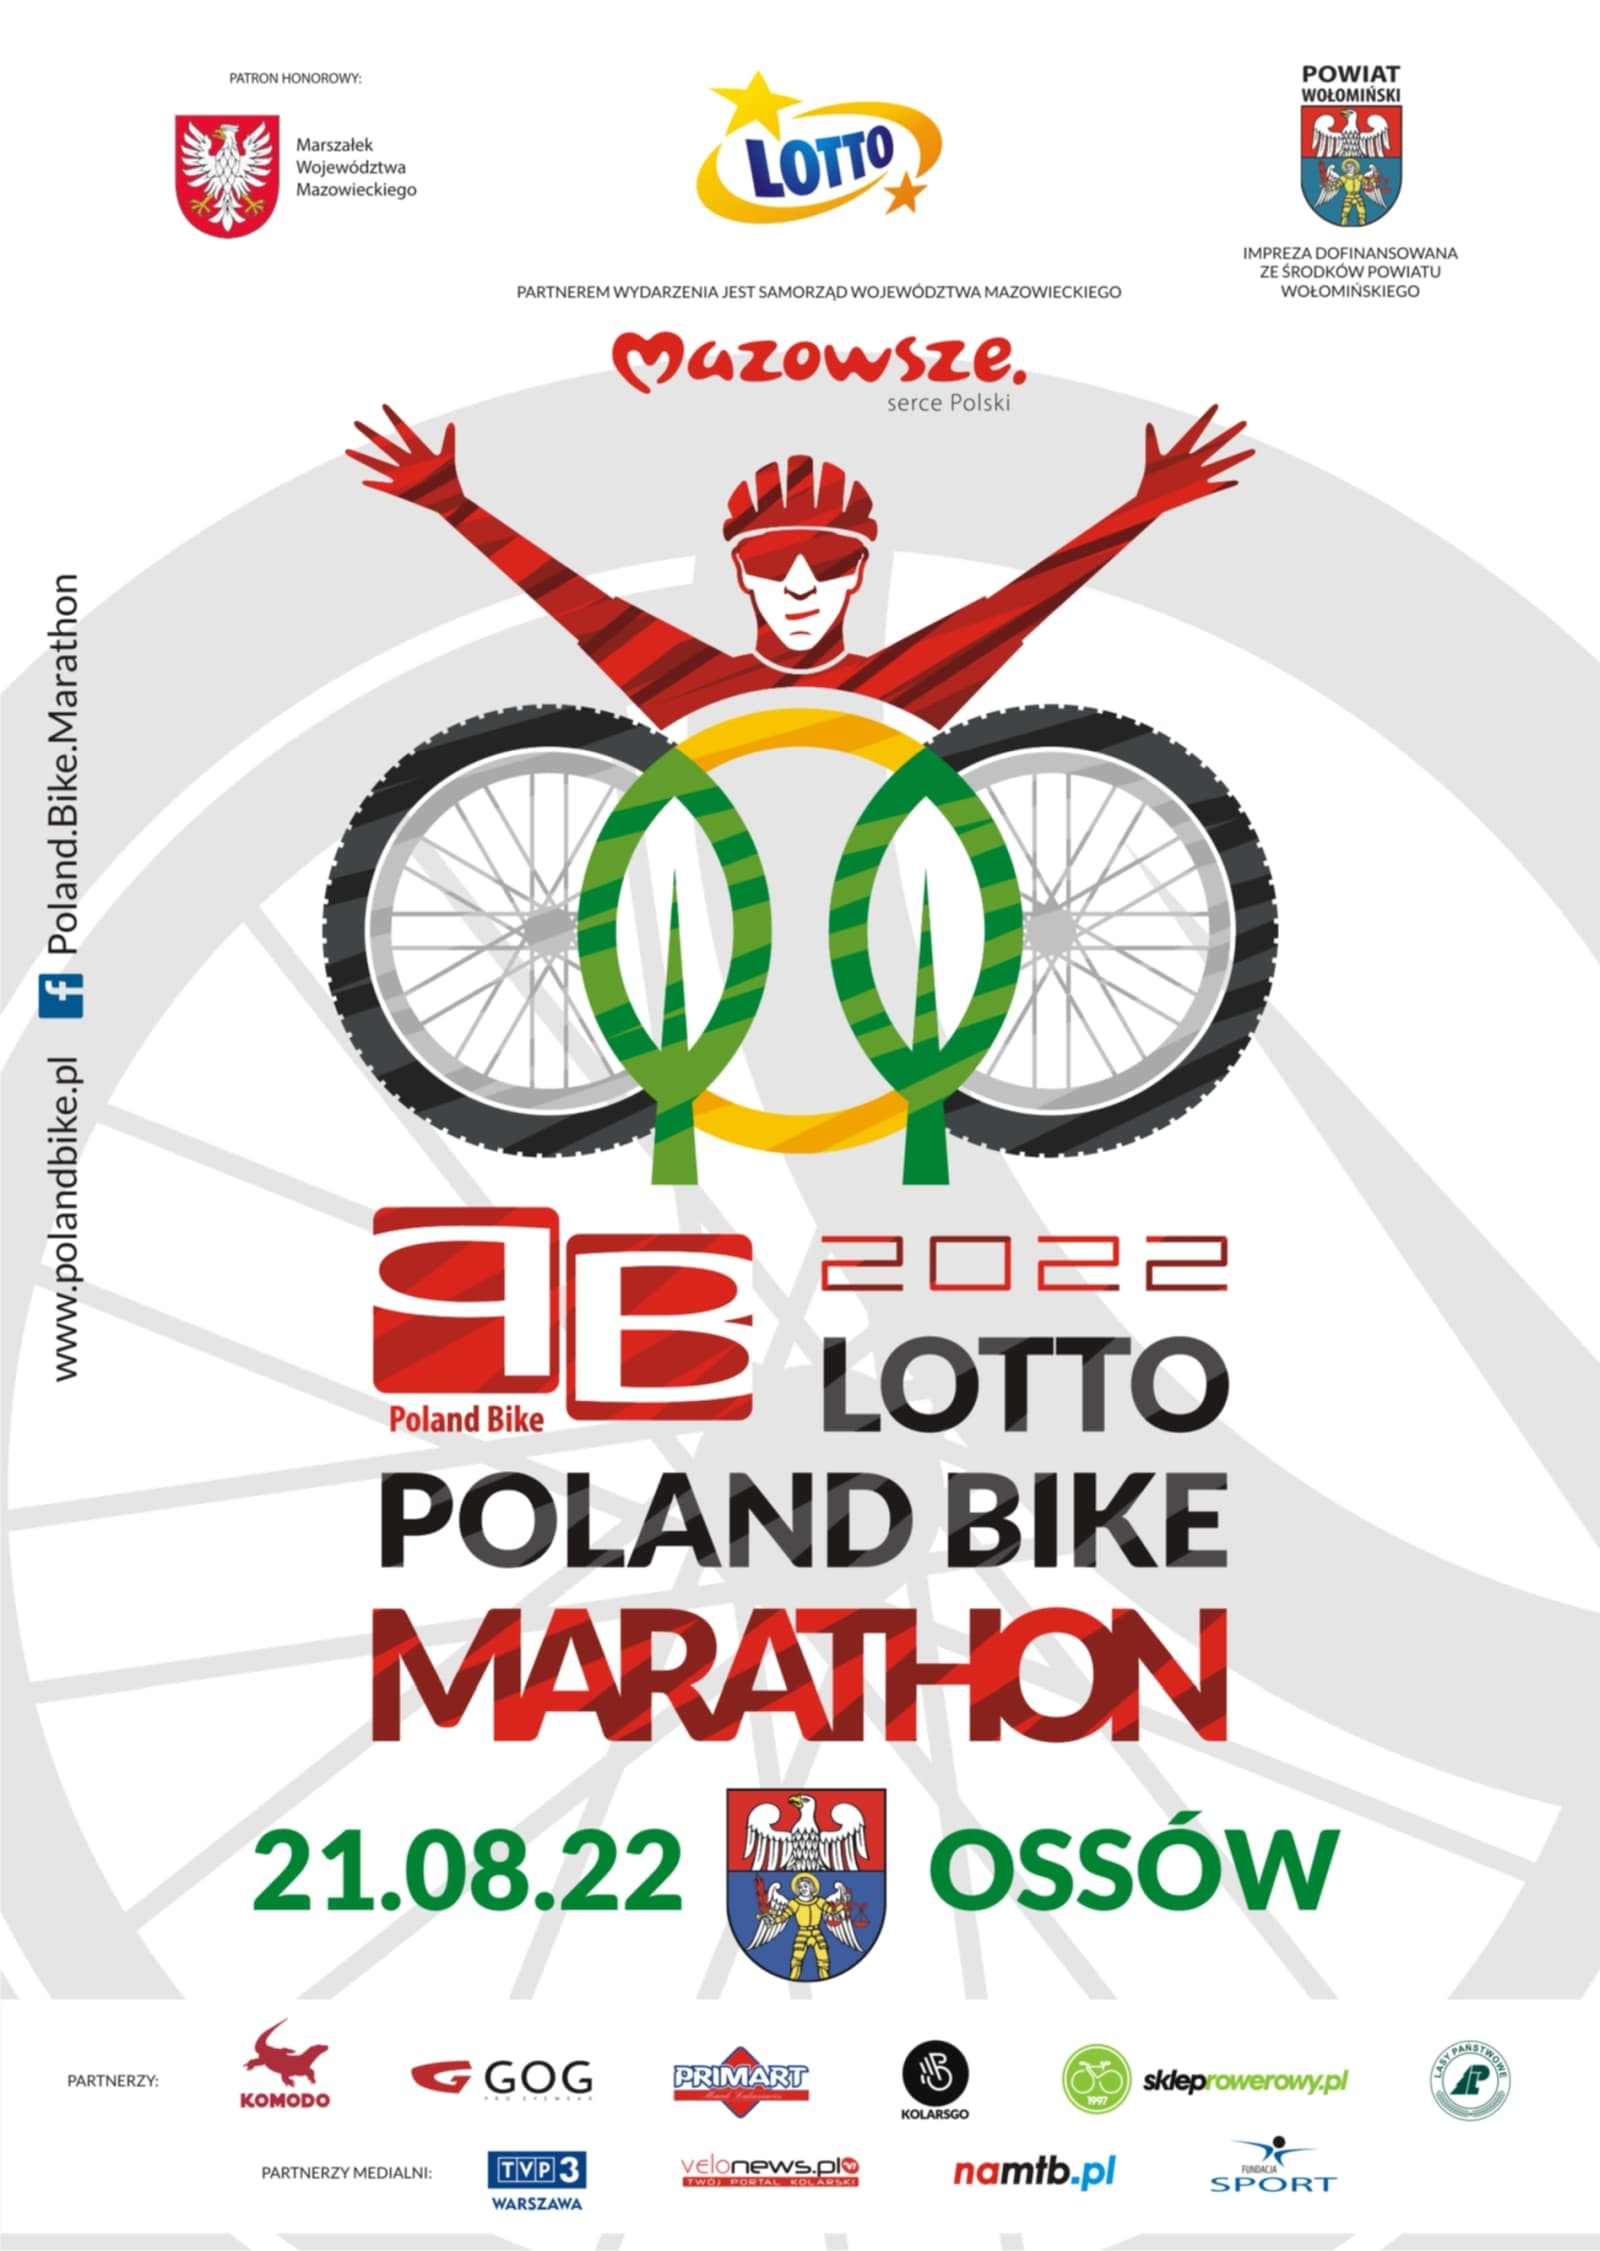 LOTTO Poland Bike Marathon  Ossowo- 21 sierpnia. Program i zapowiedź.